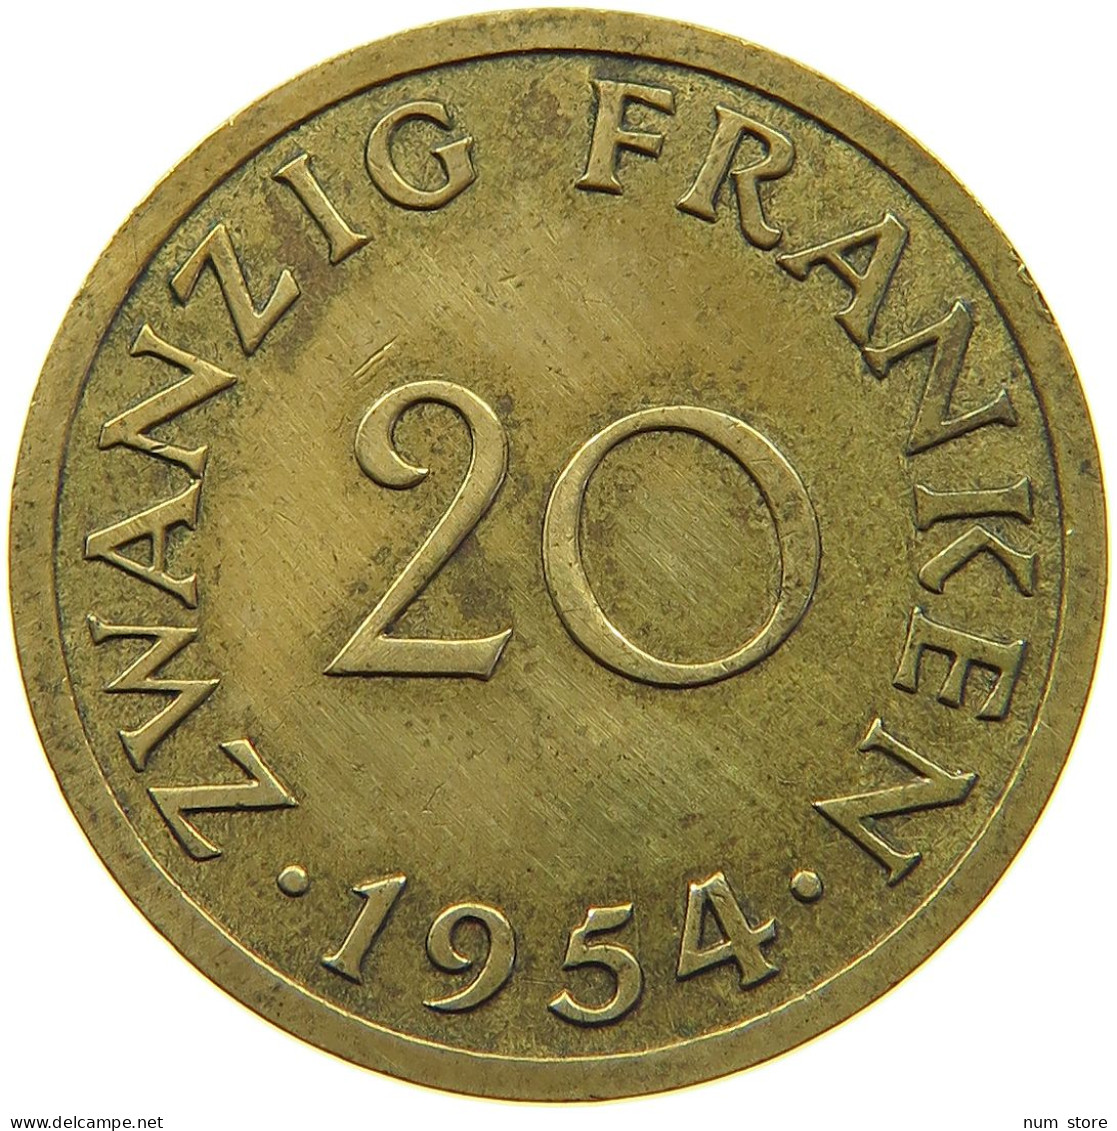 GERMANY 20 FRANKEN 1954 SAARLAND #c055 0243 - 20 Francos